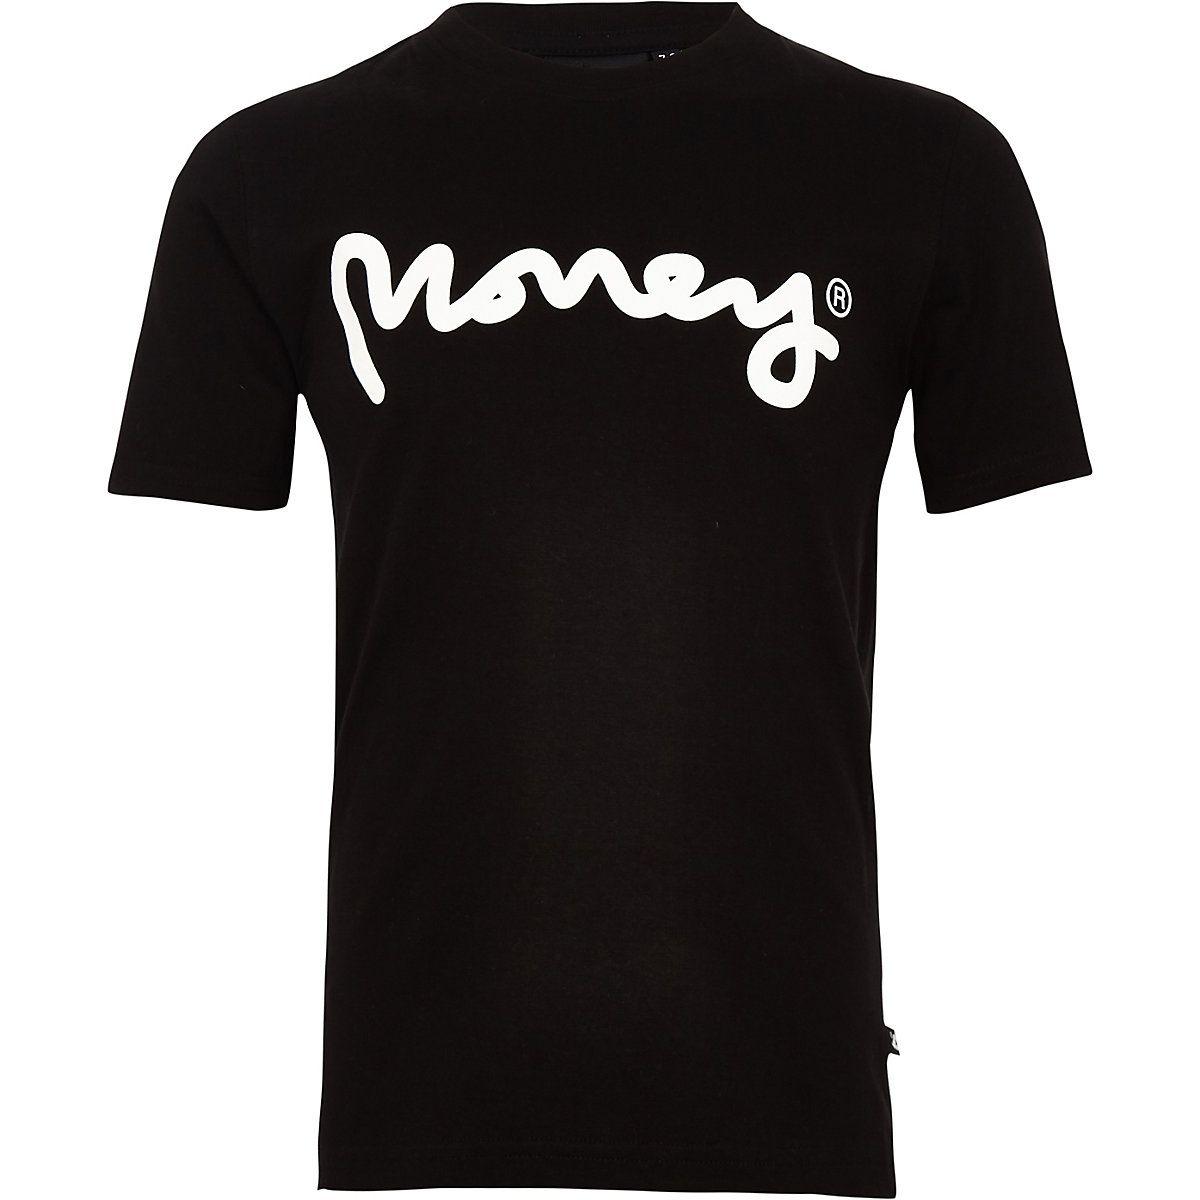 White Clothing Logo - Boys Black Money Clothing Logo T Shirt Shirts Shirts & Vests